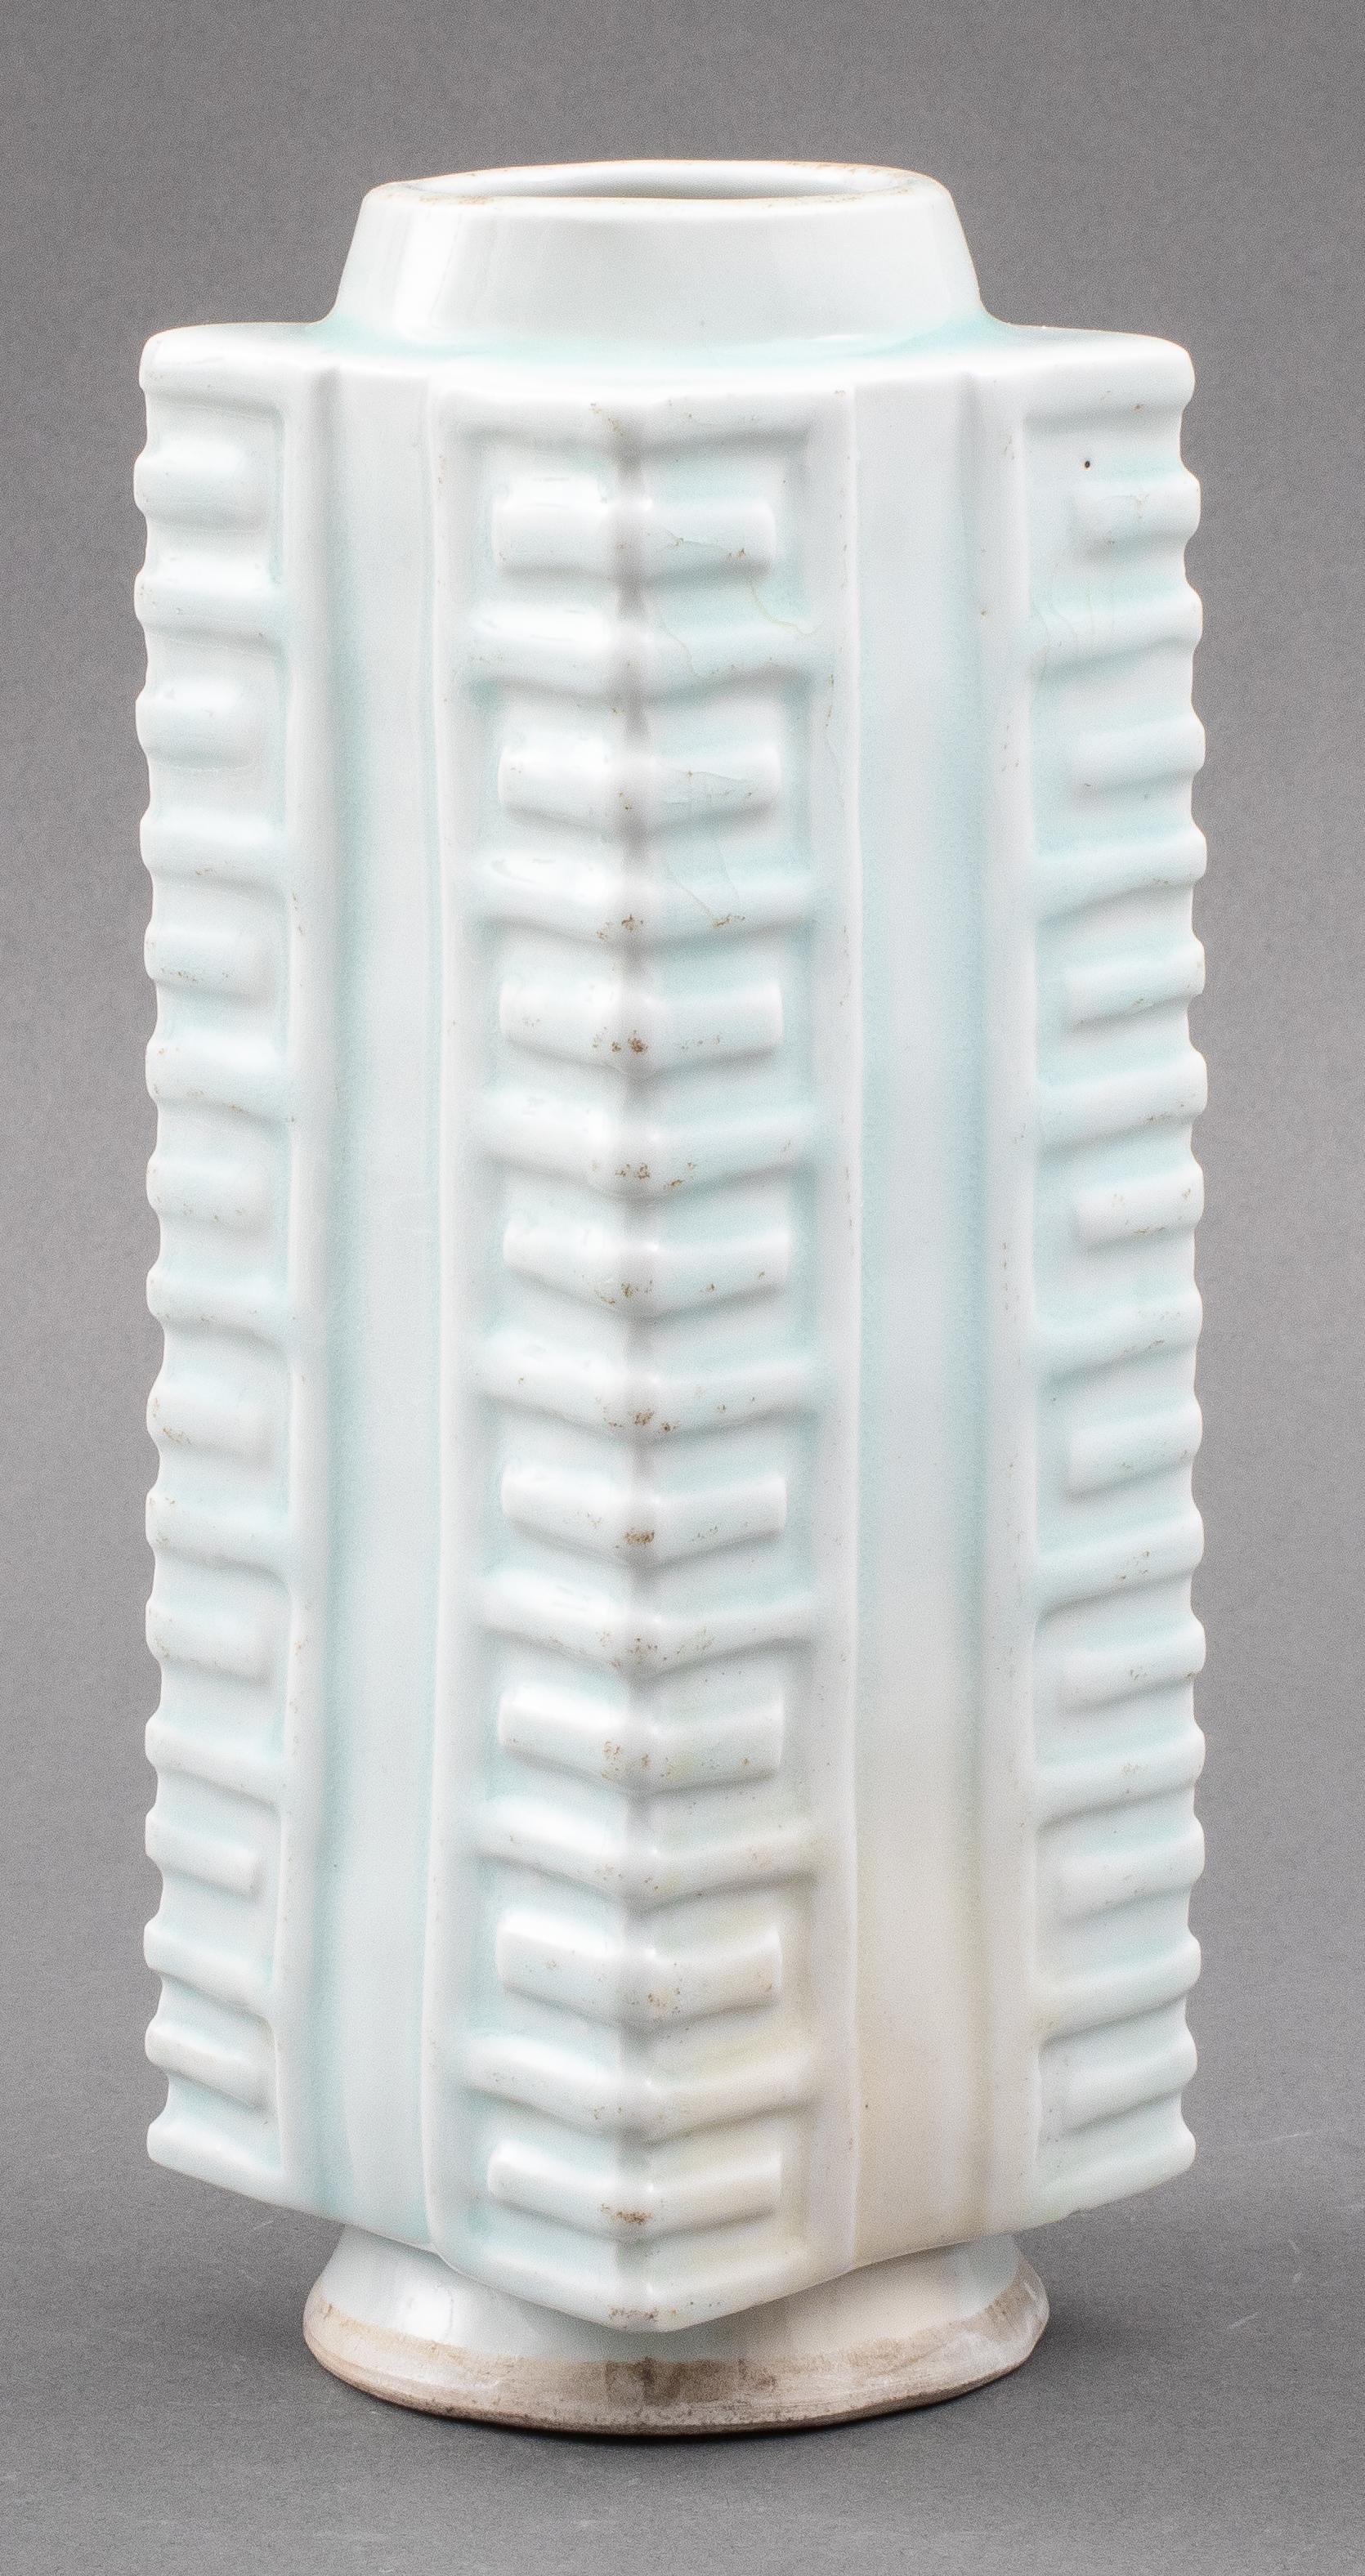 Chinese celadon glazed ceramic porcelain cong form vase, no visible marks. Measures: 10.75